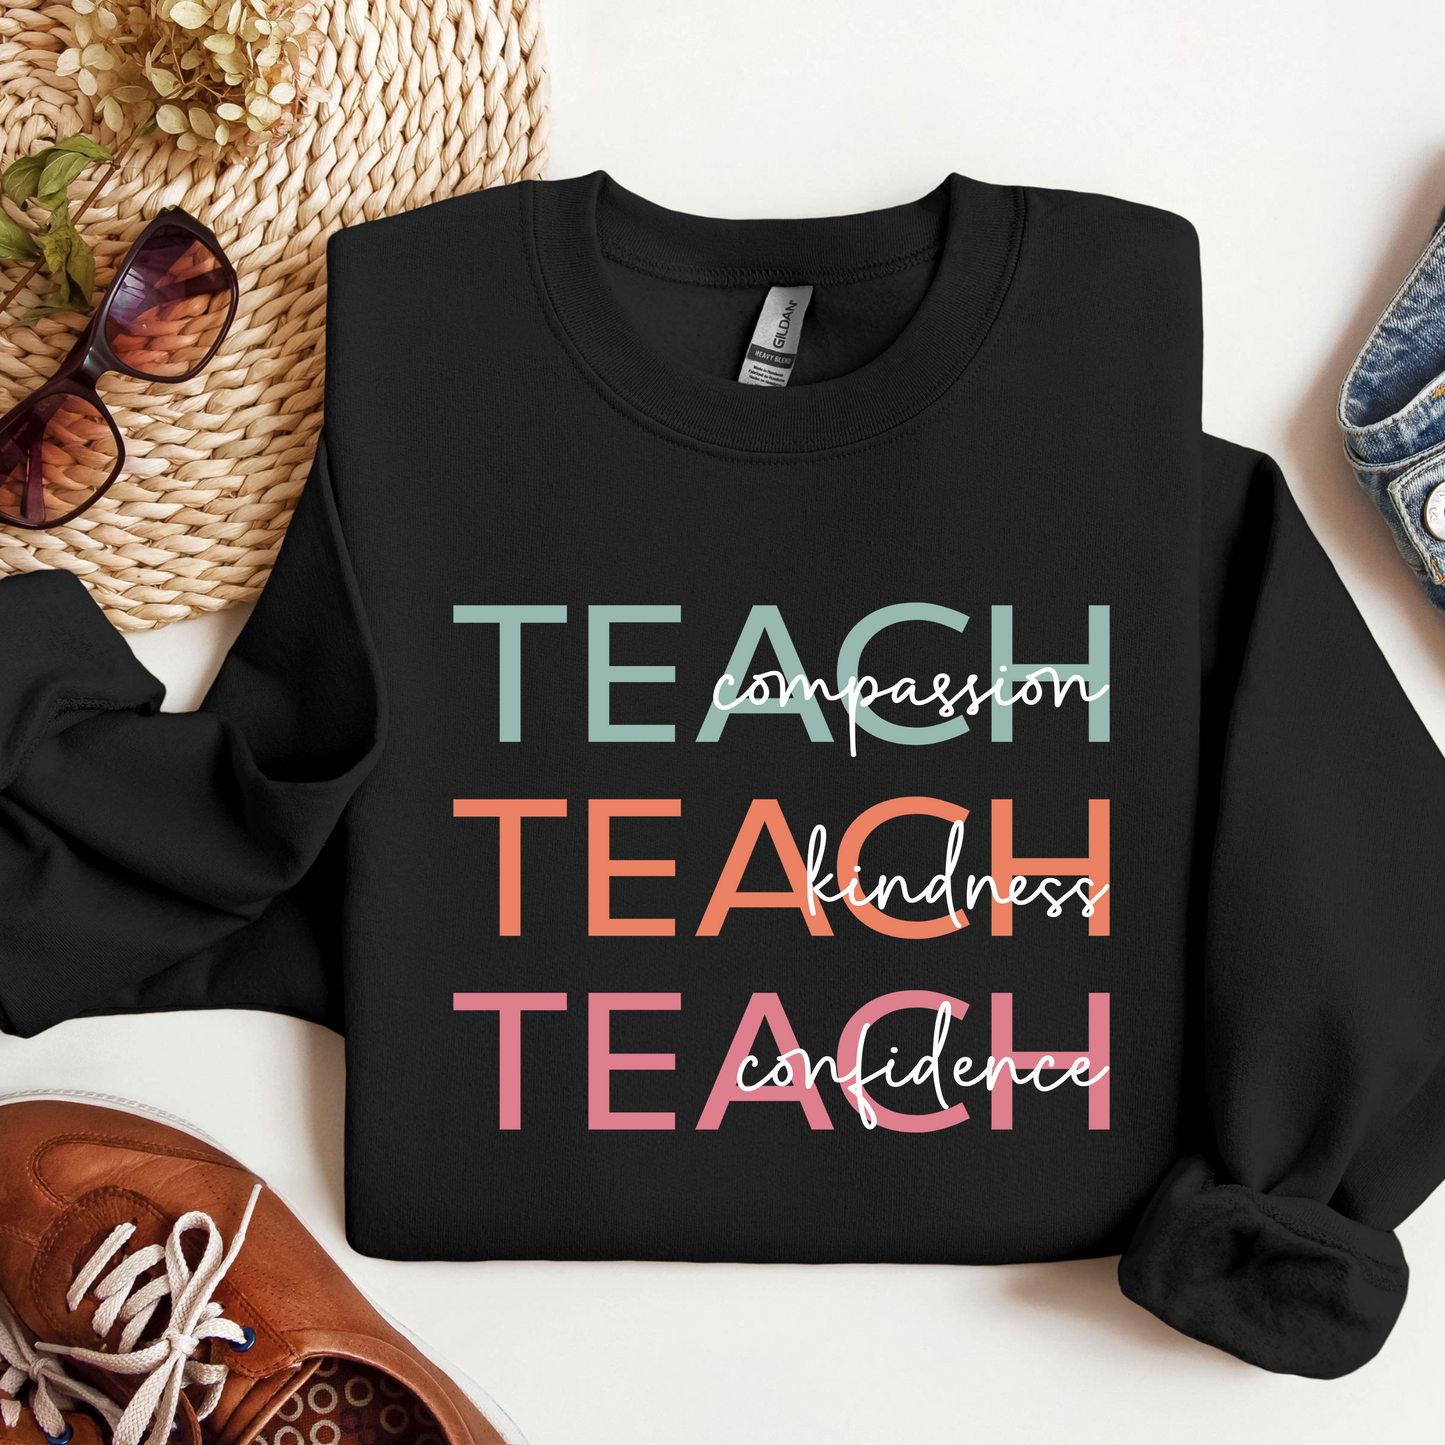 Lehrer Sweatshirt für Mitgefühl und Selbstvertrauen – Geschenk zum Schulstart